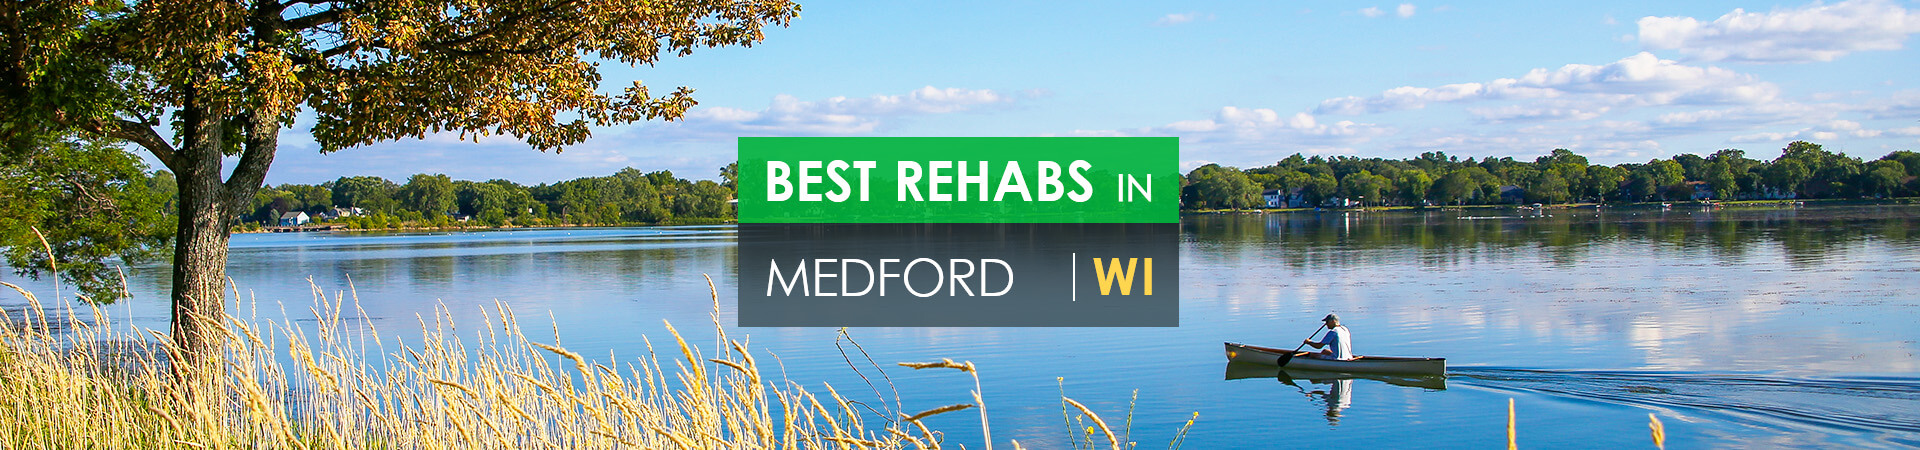 Best rehabs in Medford, WI